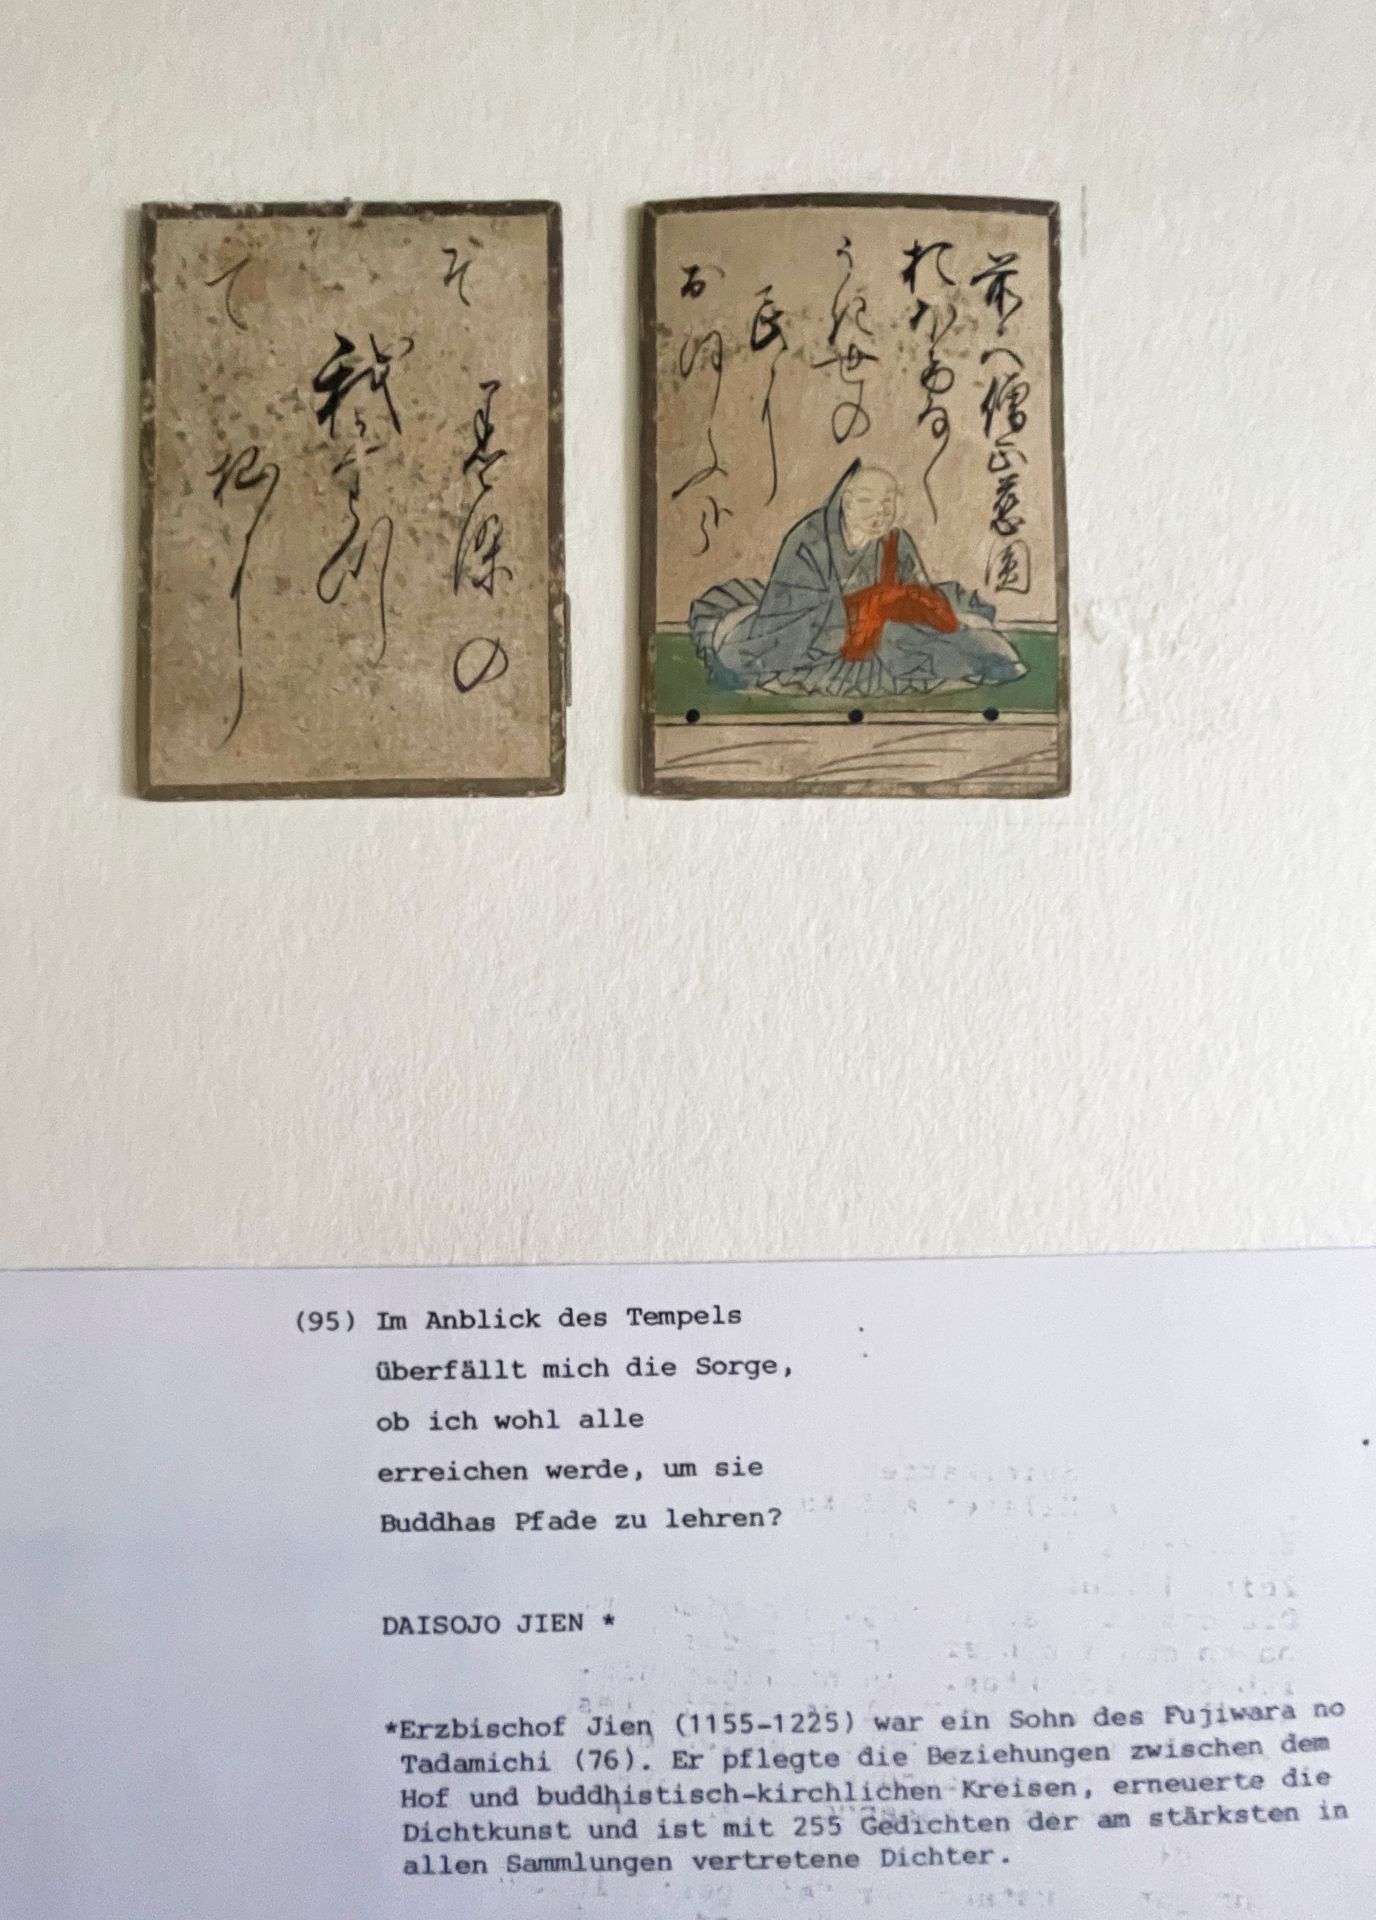 Zwei Spielkarten "Uta-Garuta" Japan, 19. Jh. mit dem Dichter Daisojo Jien und dem Gedichtanfang Im - Image 3 of 3